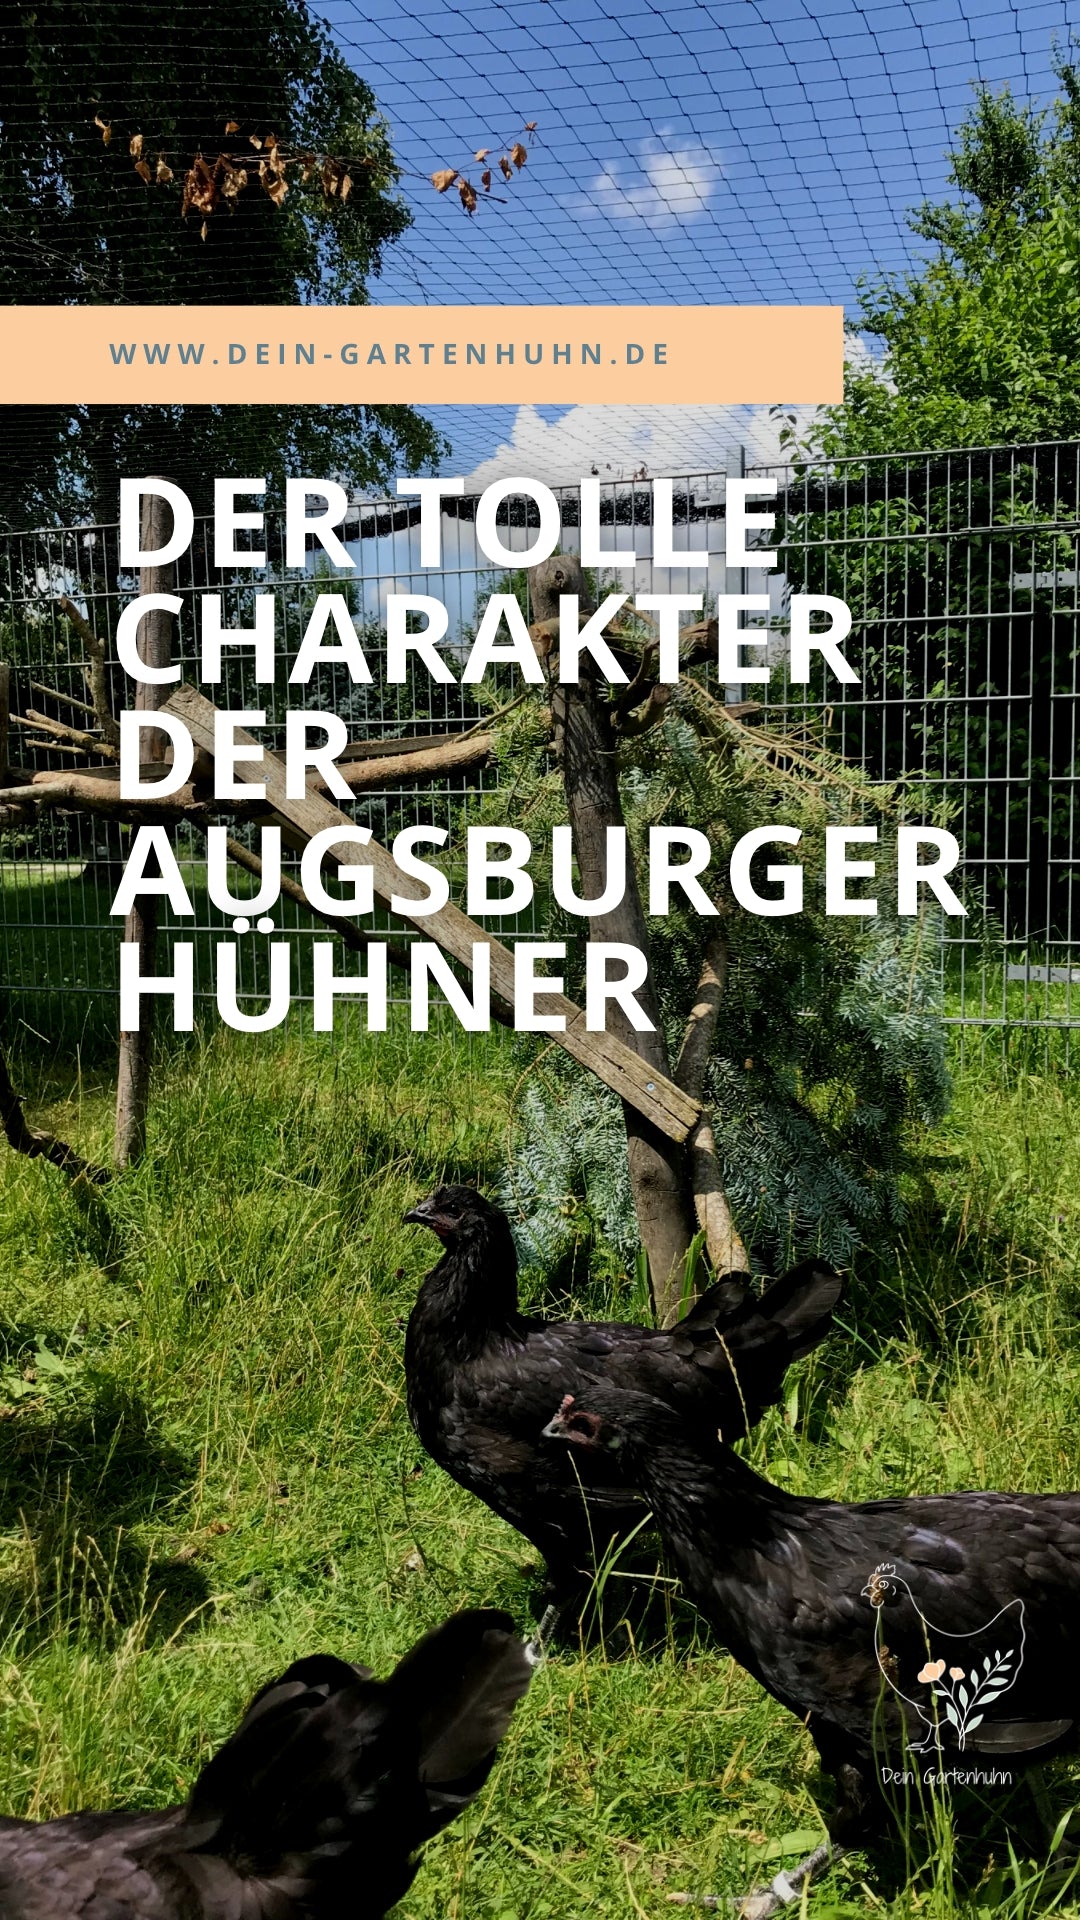 Augsburger Hühner haben einen tollen Charakter. Abgebildet sind ein paar Junghennen auf grüner Wiese.